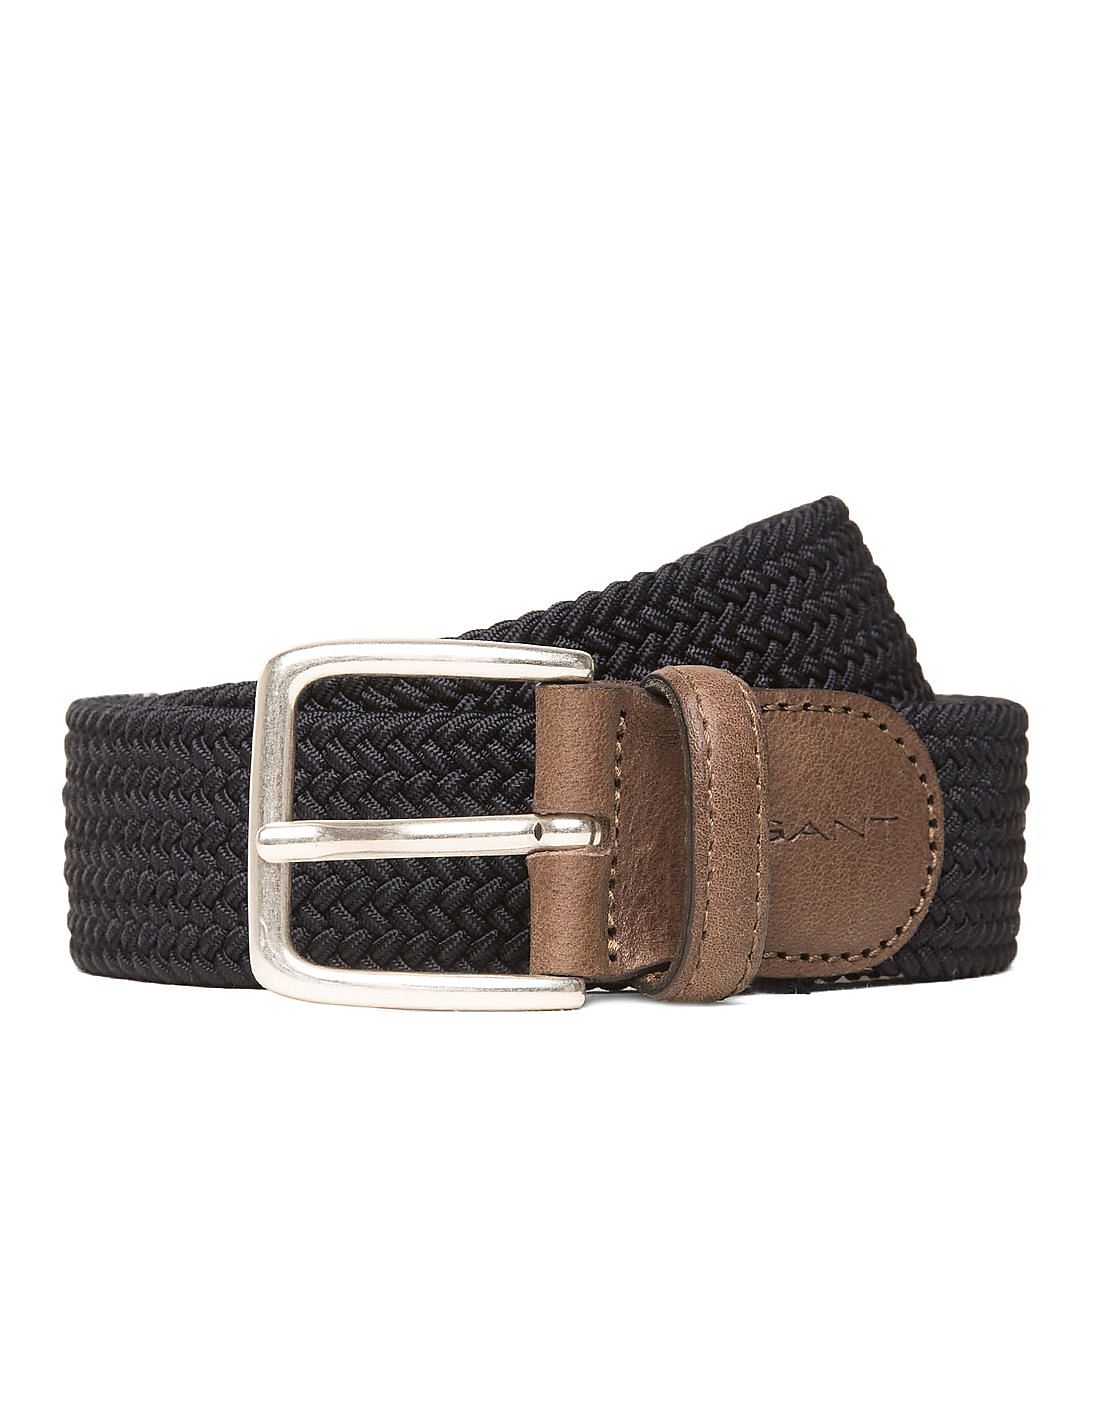 Buy Gant Leather Trim Braided Belt - NNNOW.com